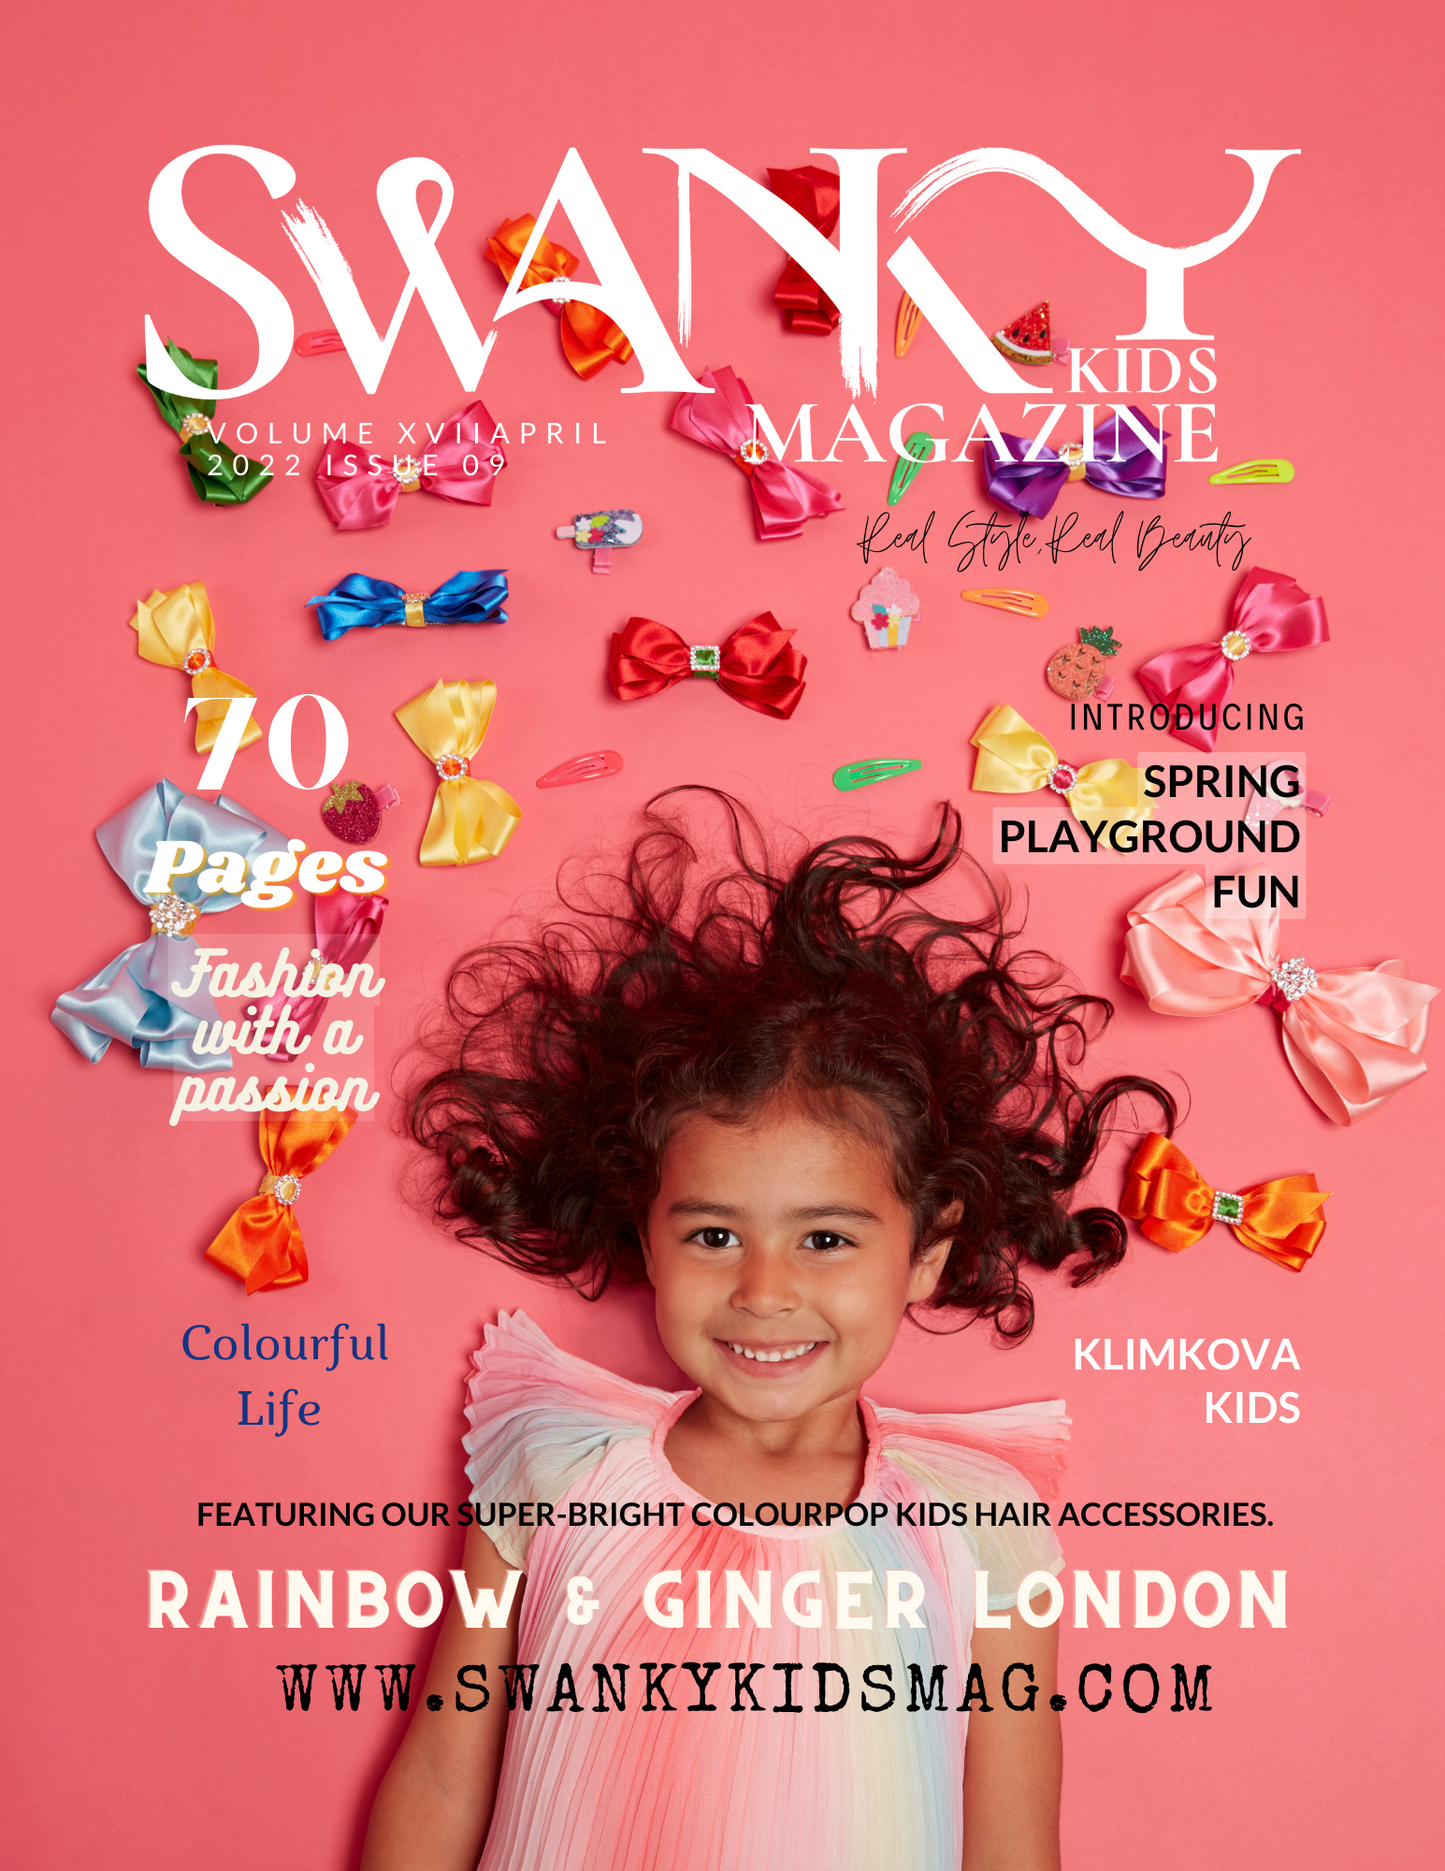 Swanky Kids Magazine APRIL 2022 VOL XVII Issue 9